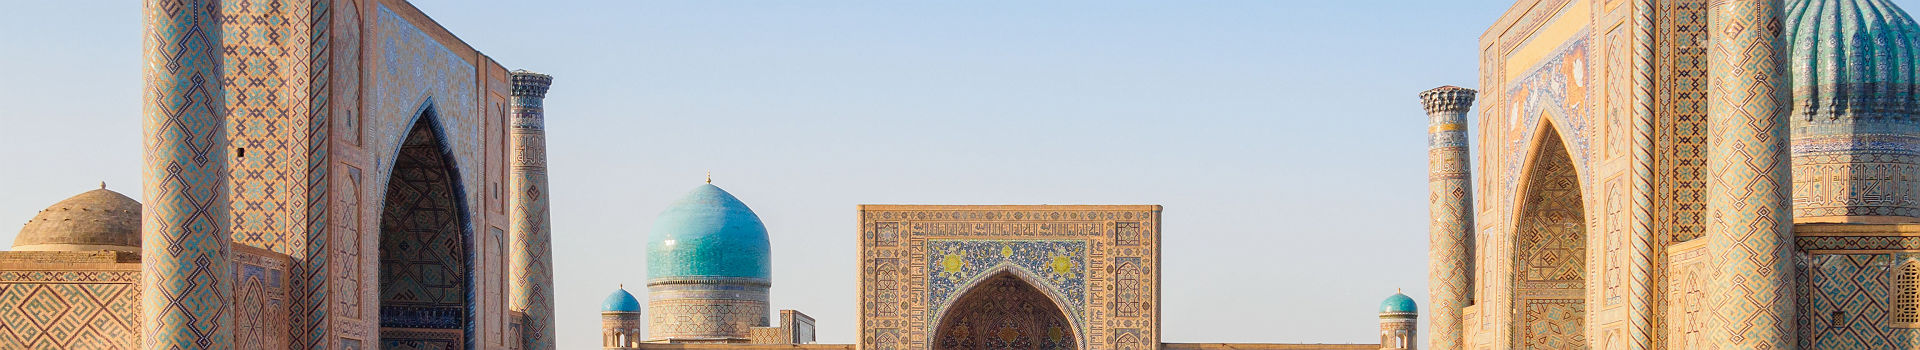 Asie Centrale - Ouzbékistan - Vue sur place Registan